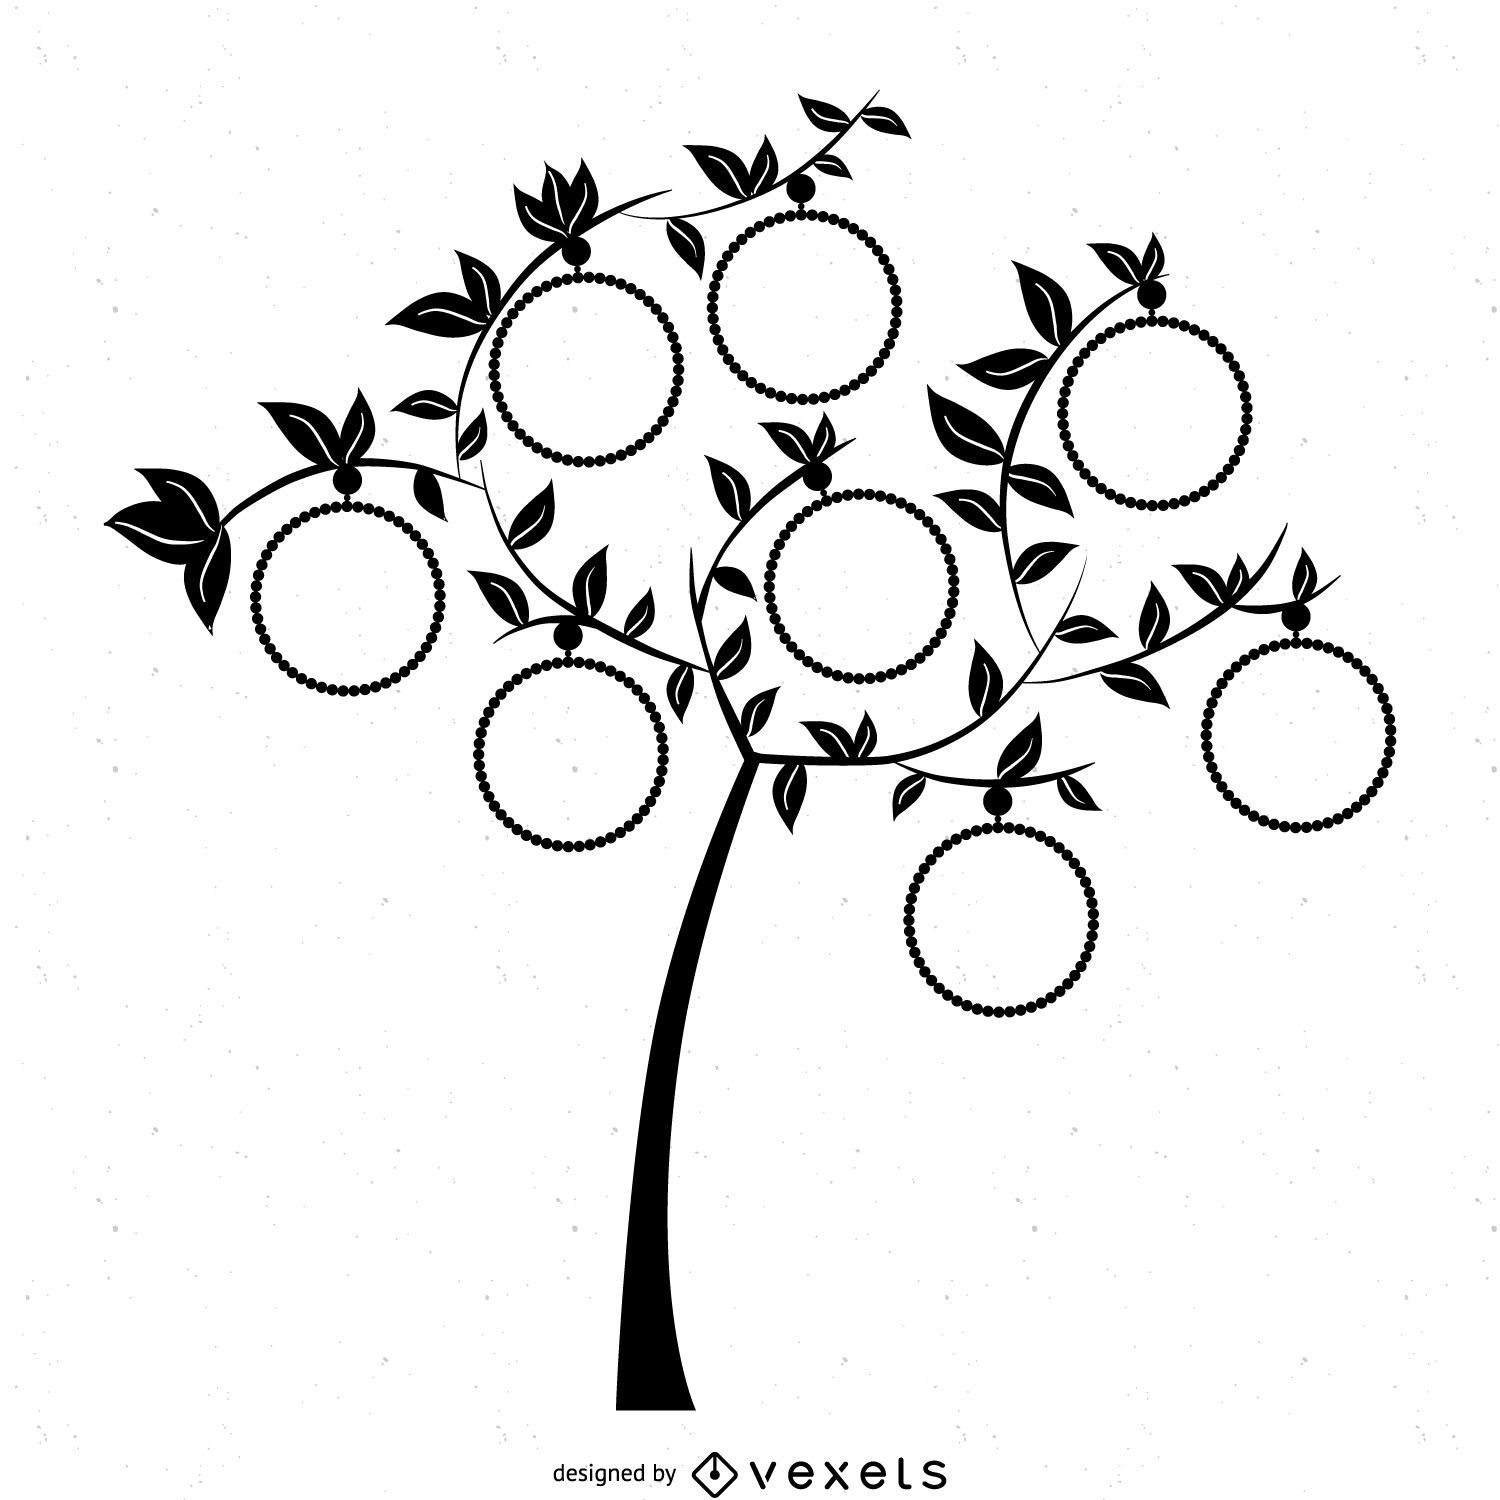 Modelo de árvore genealógica com molduras